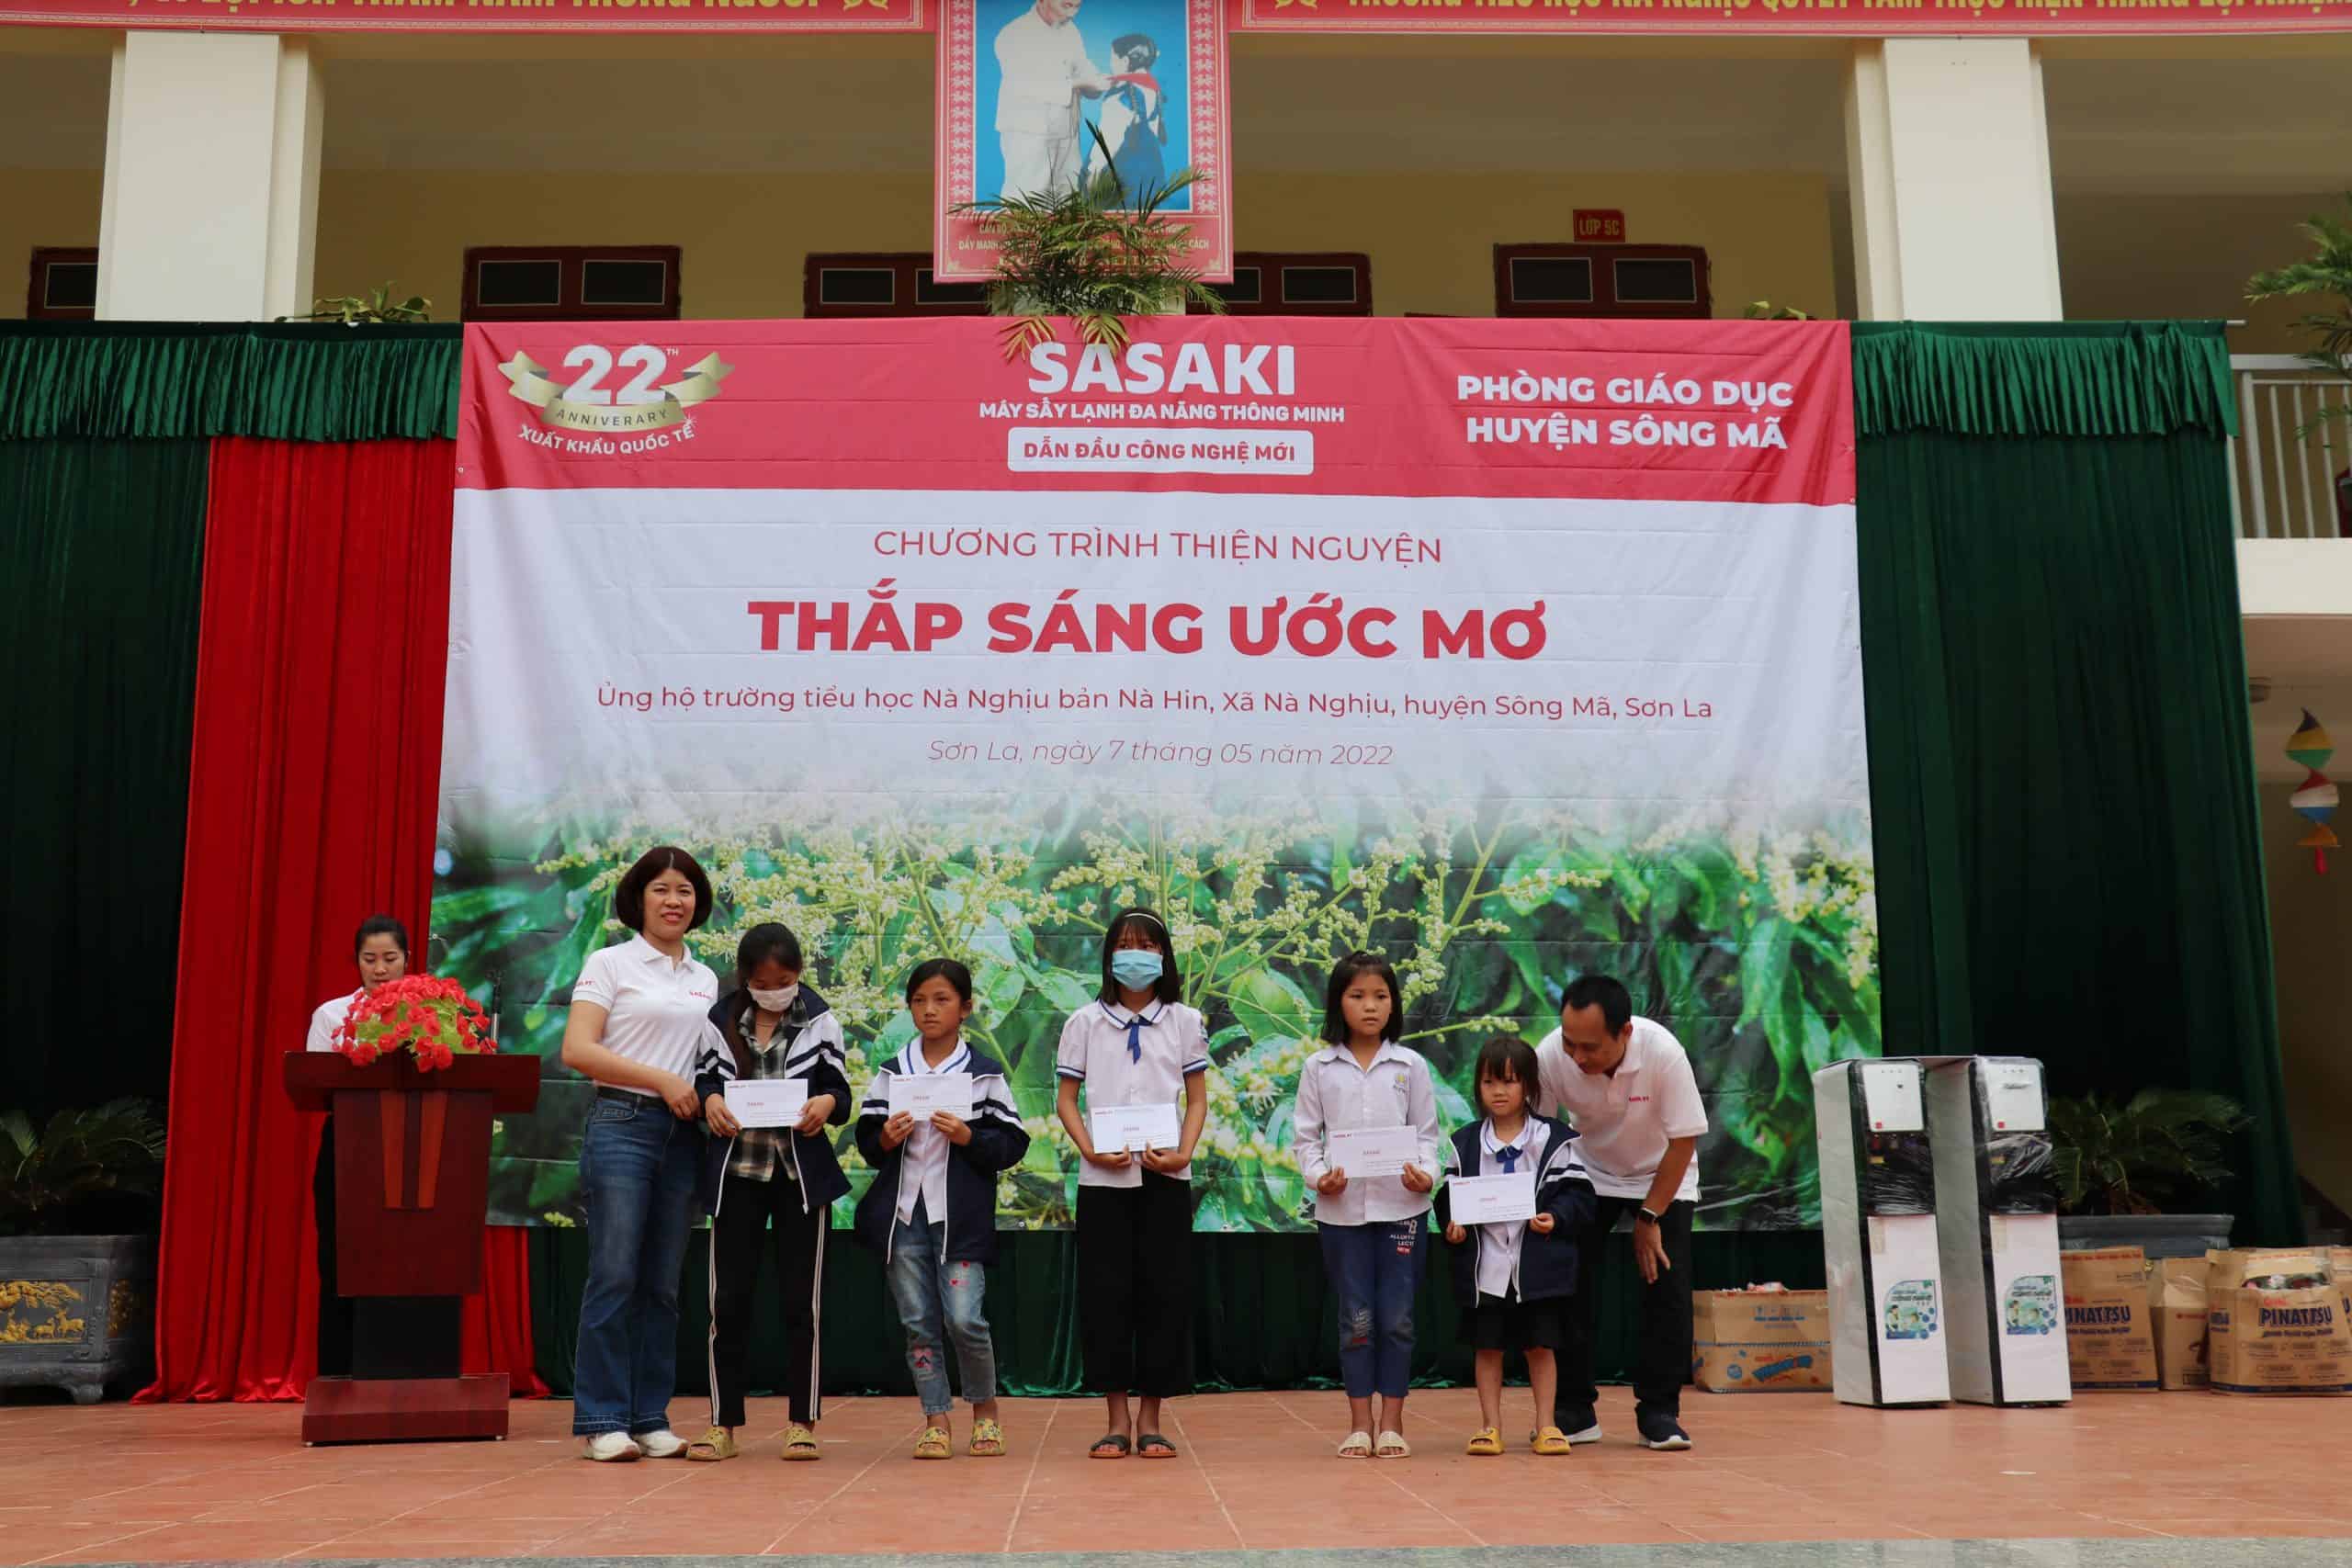 Đại diện SASAKI trao tặng các phần qua cho học sinh tiểu học trường Nà Nghịu, Sơn La